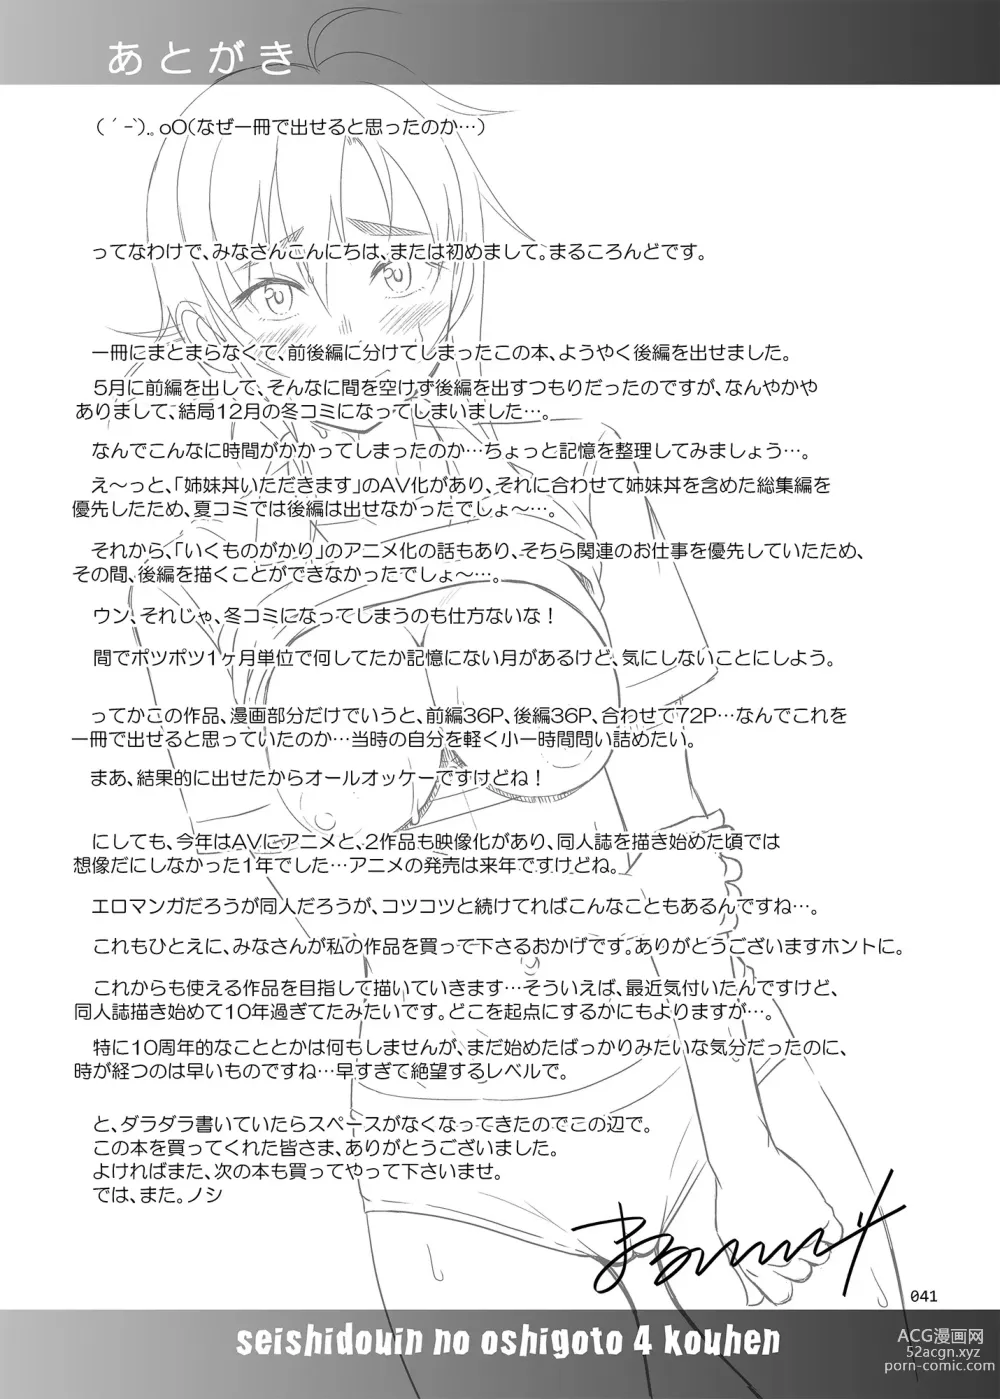 Page 41 of doujinshi Seishidouin no Oshigoto 4 Kohen Rippana Benki ni Sodatta node Daimanzoku de Shidou wo Oeta